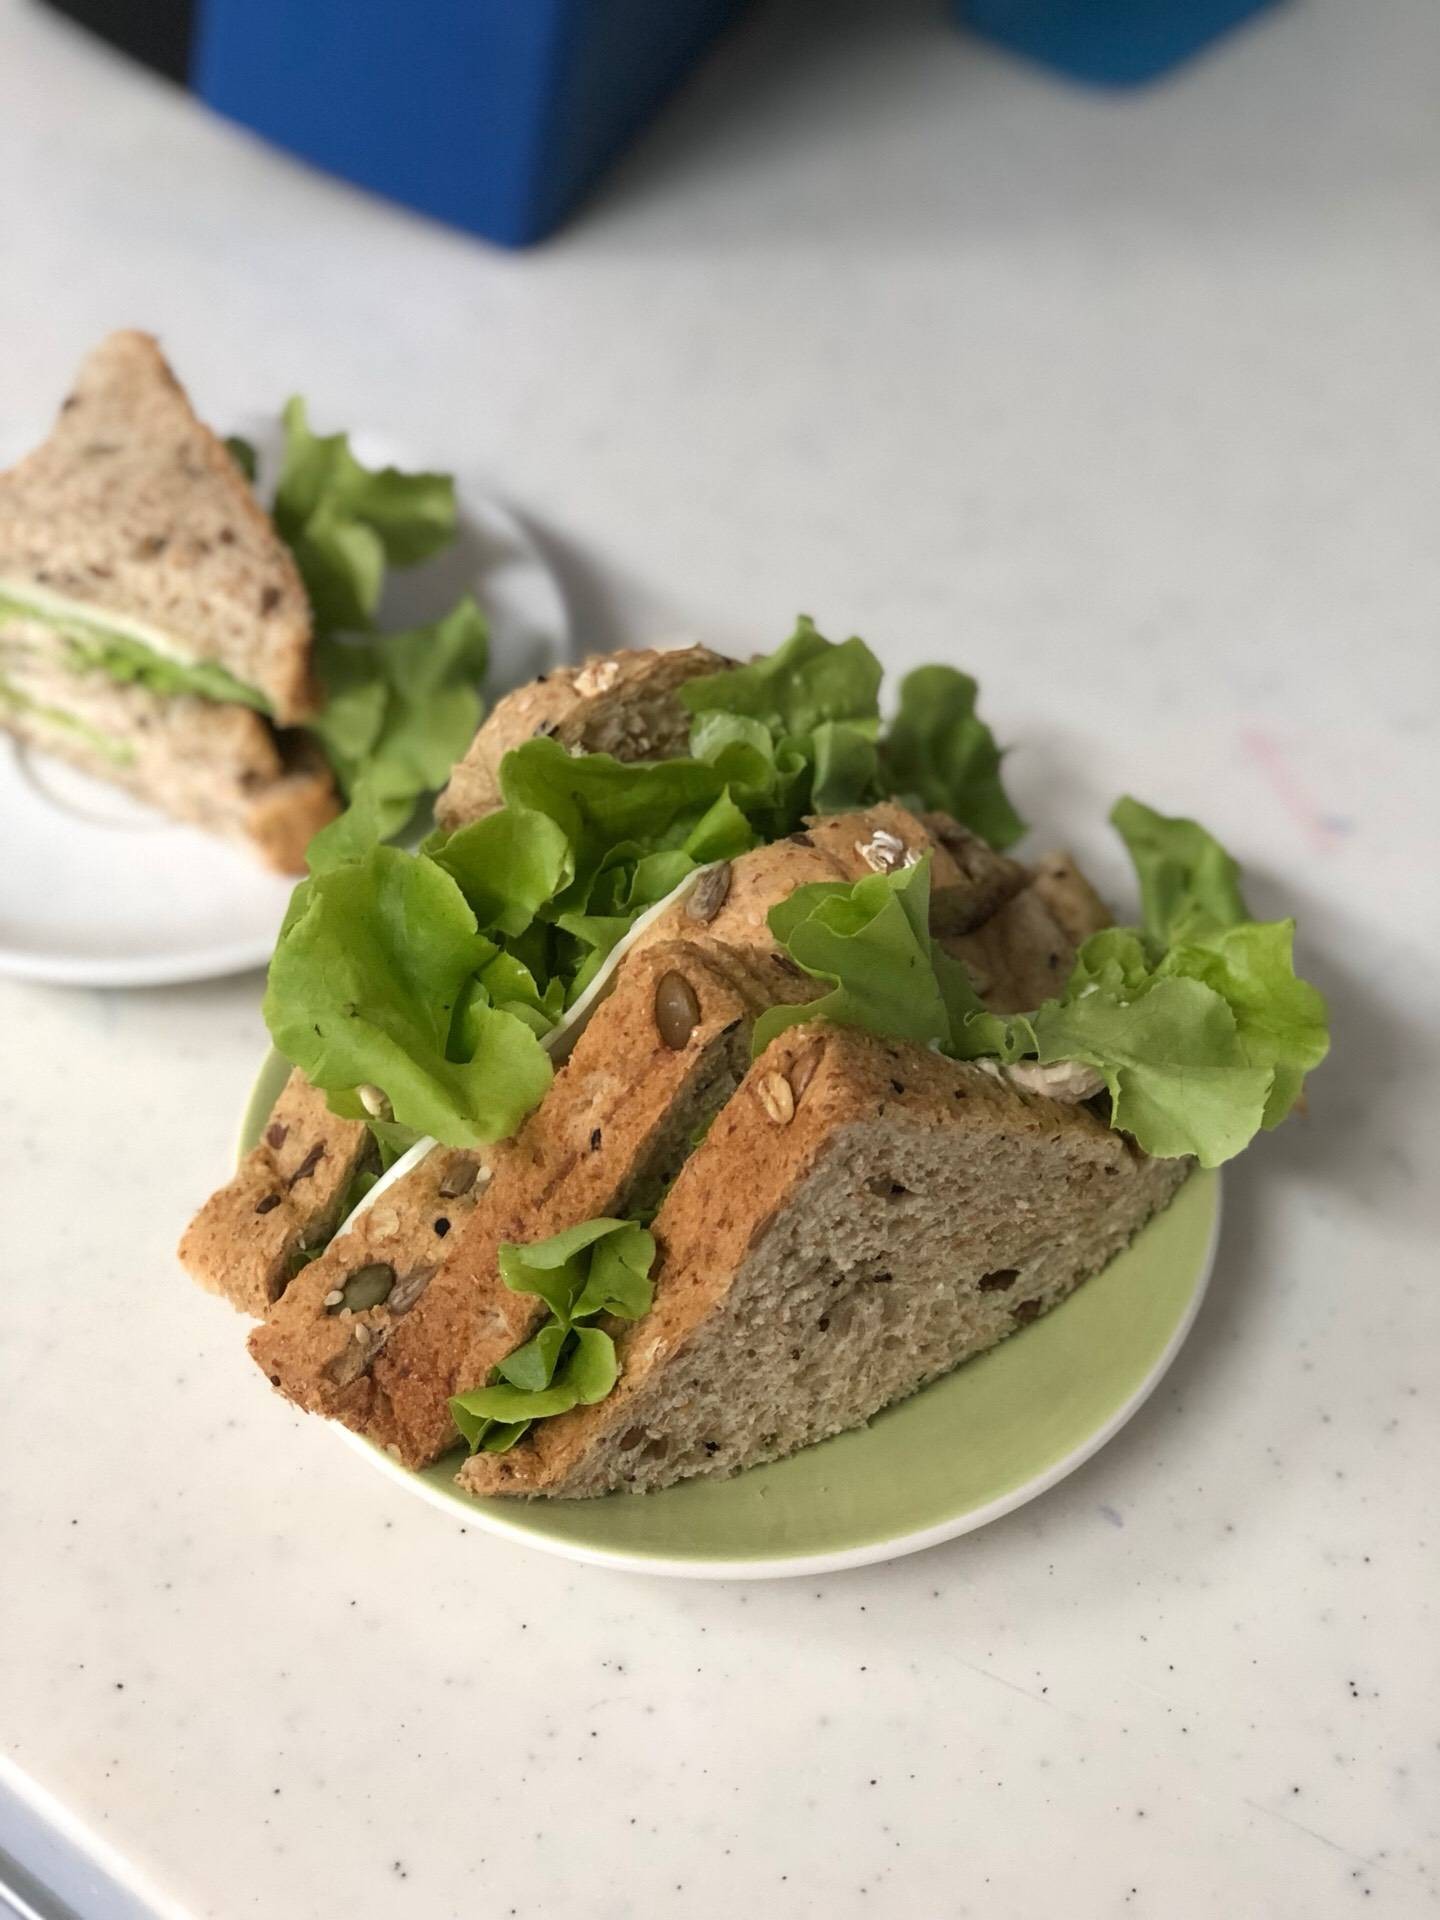 Officemade gourmet sandwich 